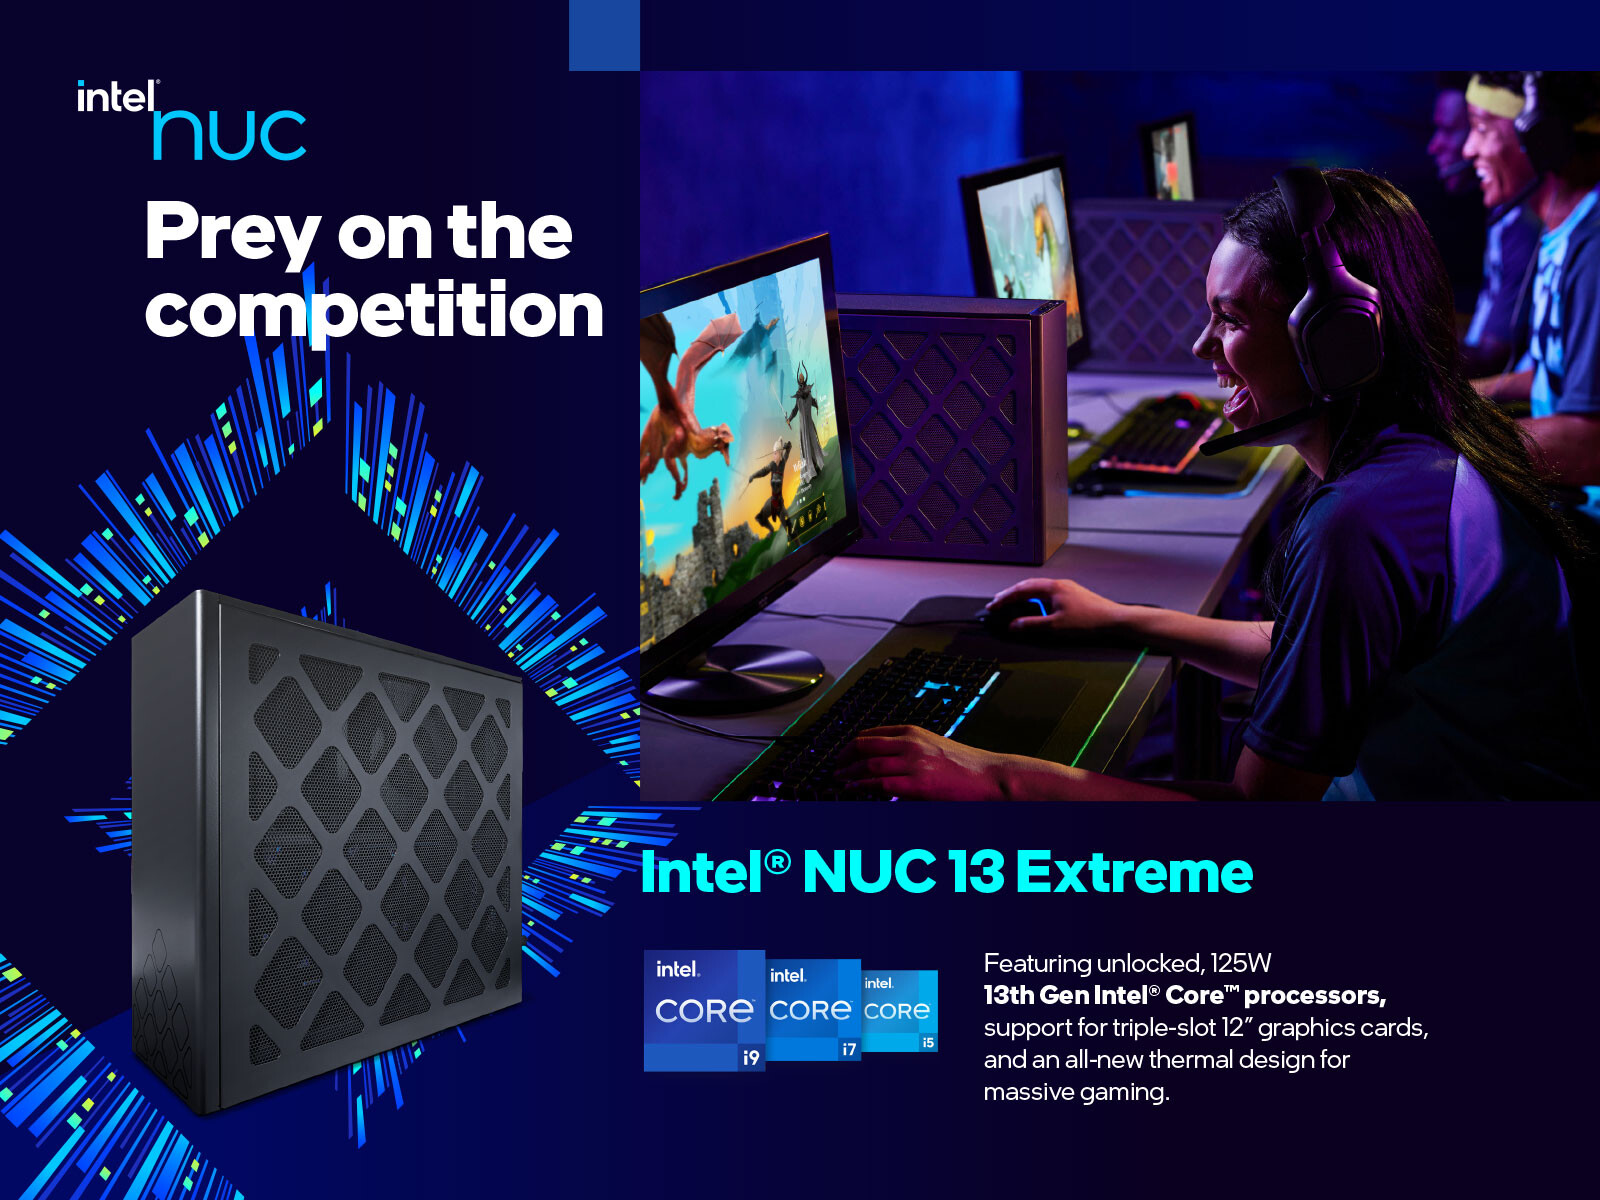 Intel anuncia los Intel NUC 13 Extreme